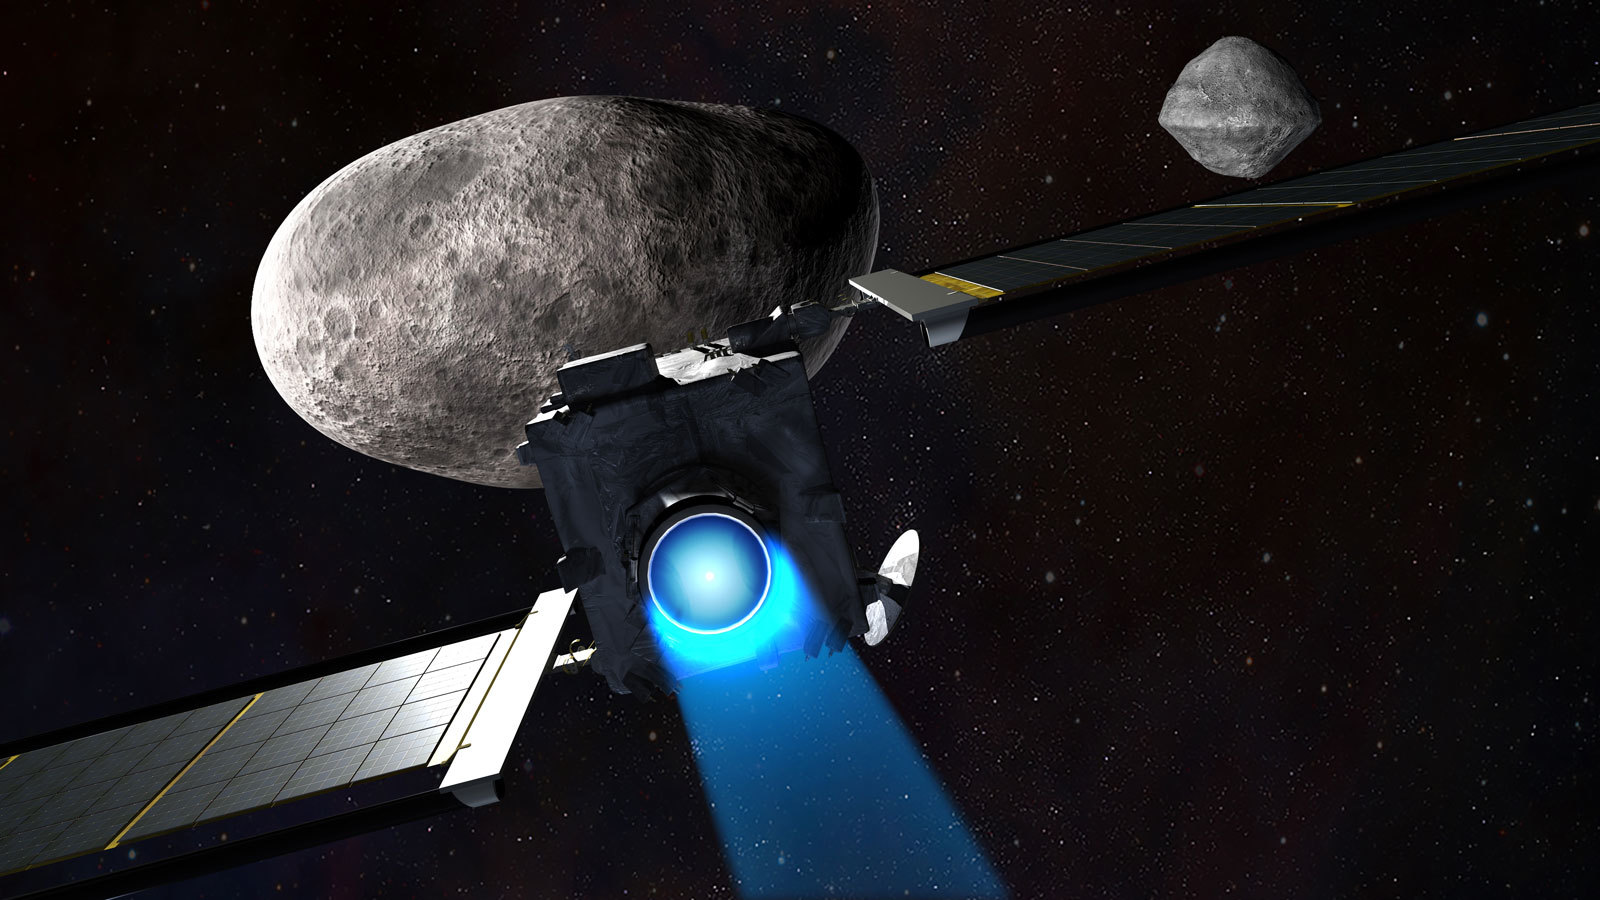 Следующей ночью зонд-камикадзе DART врежется в астероид, чтобы изменить его траекторию  за столкновением будут наблюдать телескопы James Webb, Hubble